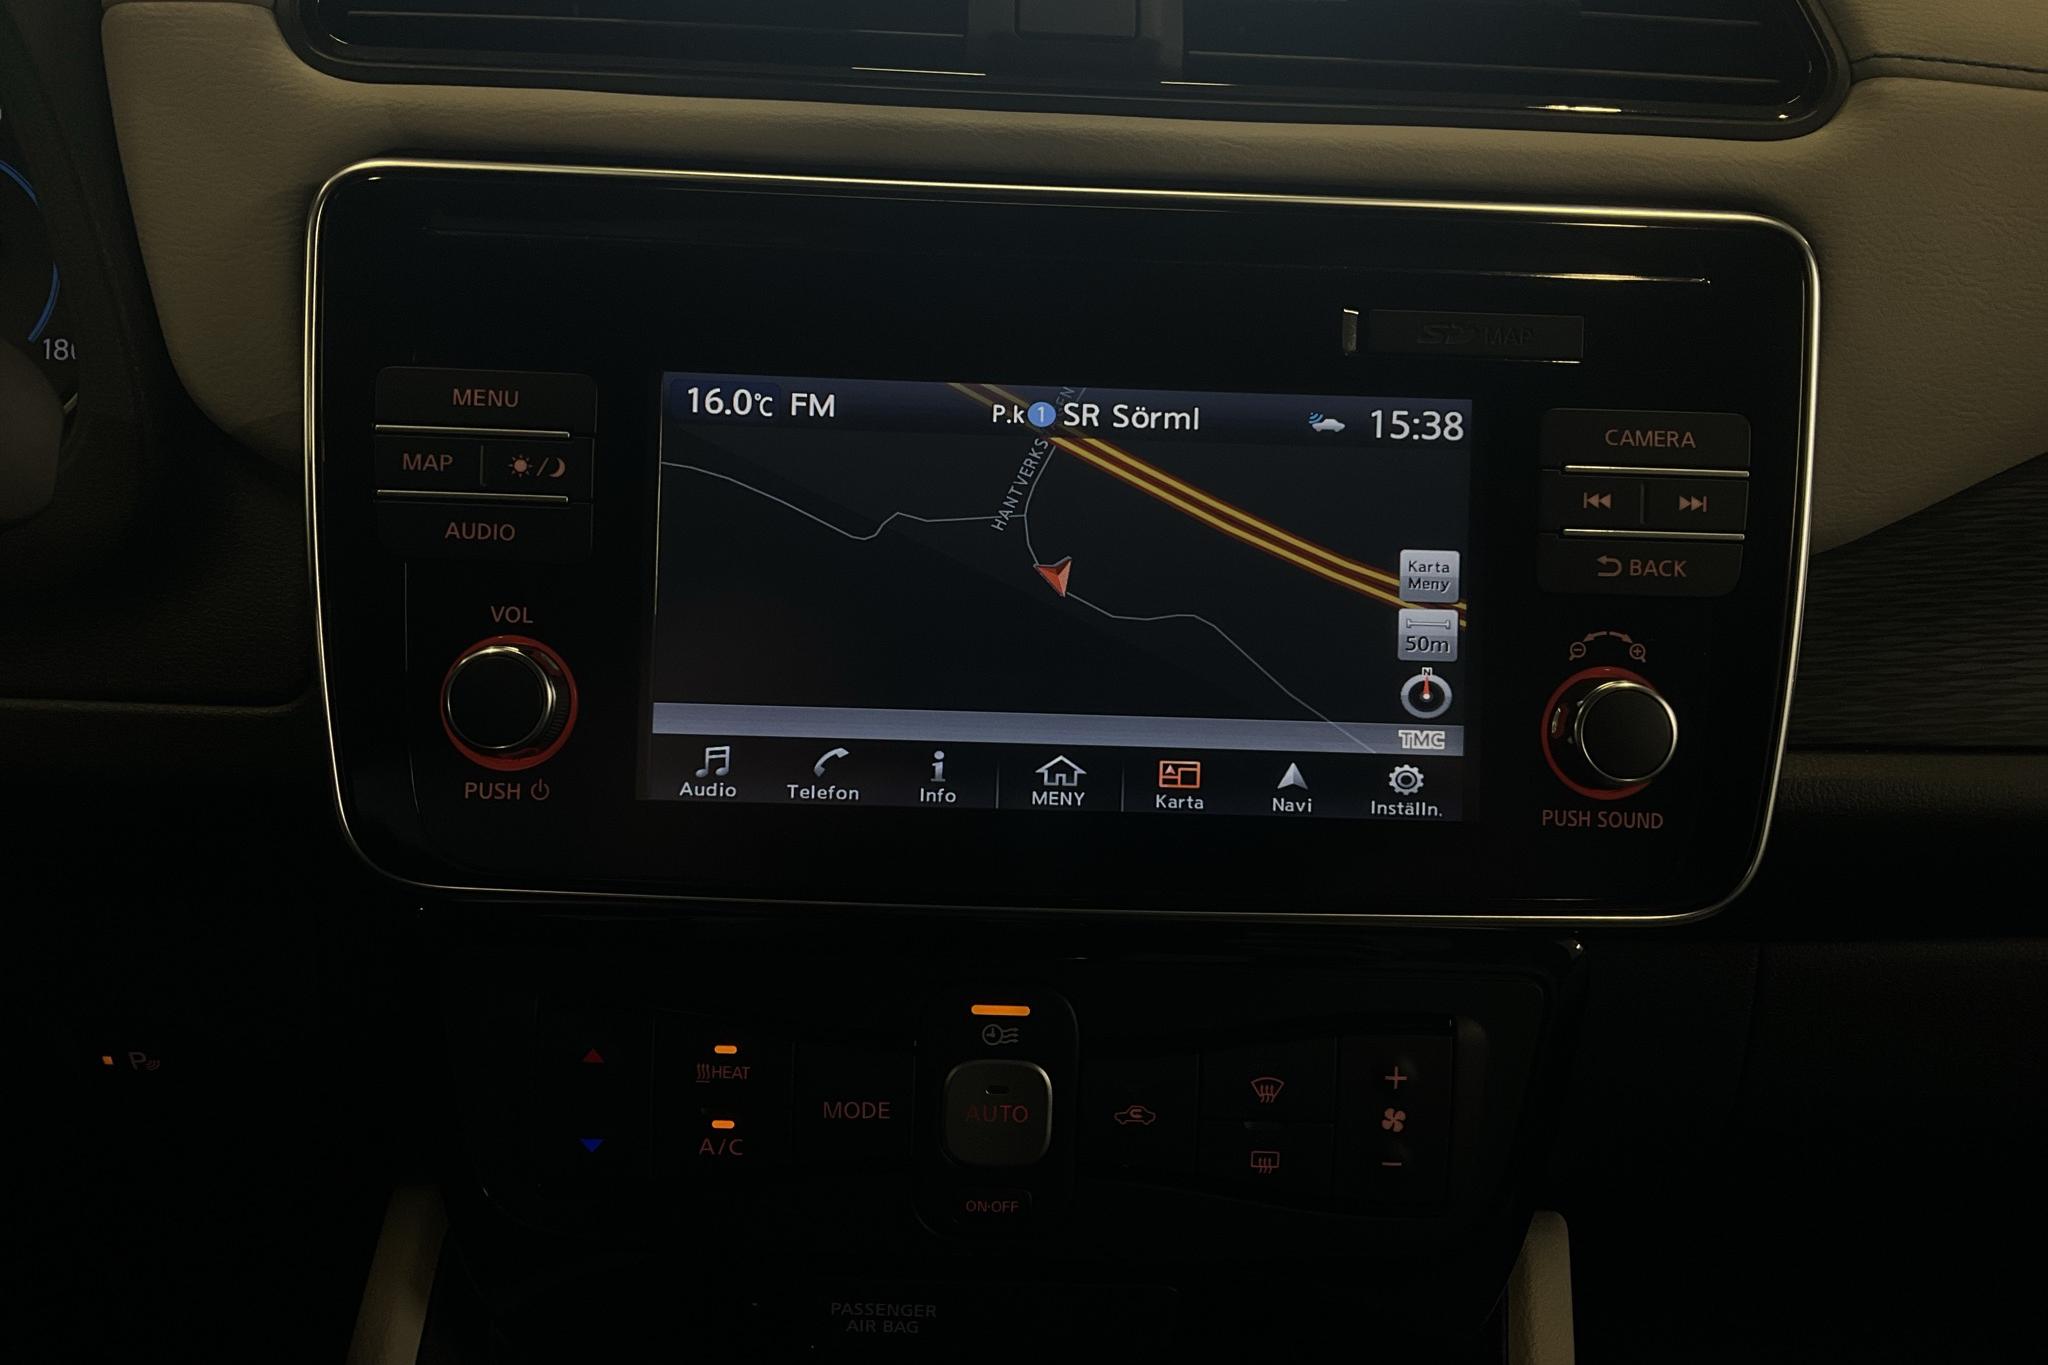 Nissan LEAF 5dr 39 kWh (150hk) - 31 820 km - Automaatne - valge - 2019